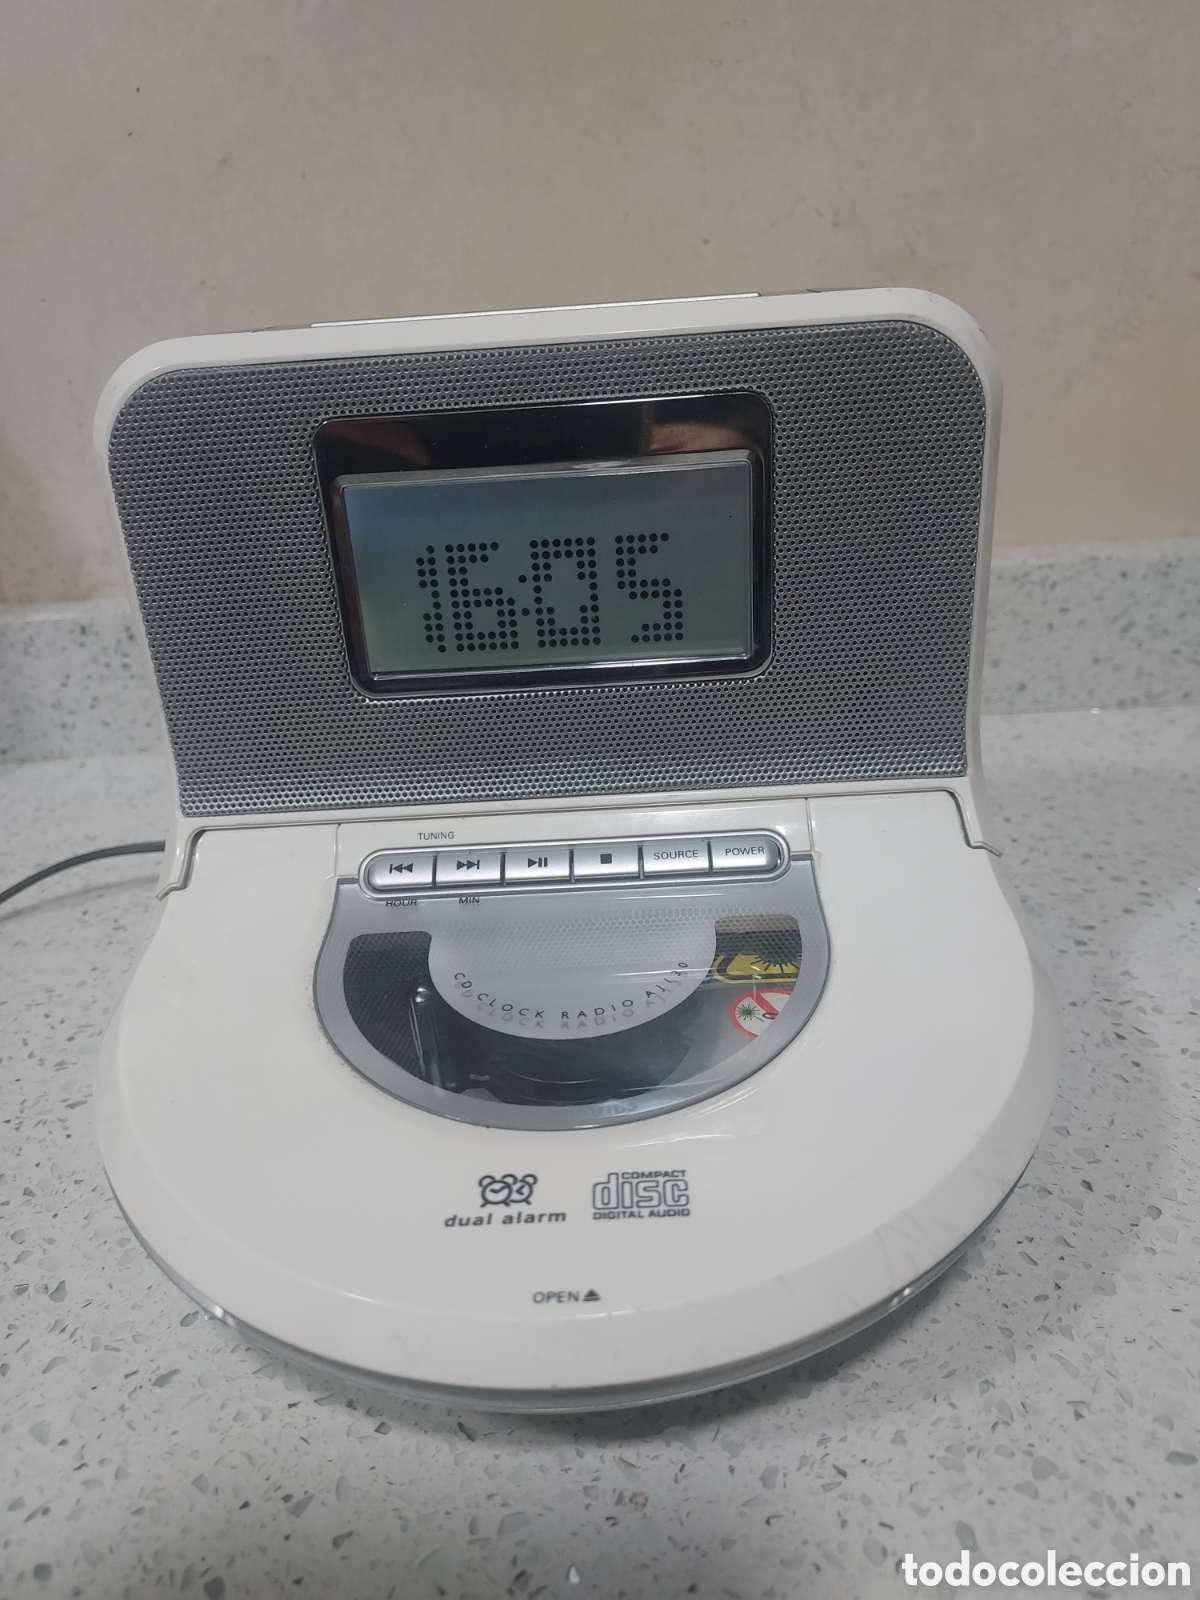 radio reloj cd despertador philips. modelo aj13 - Compra venta en  todocoleccion